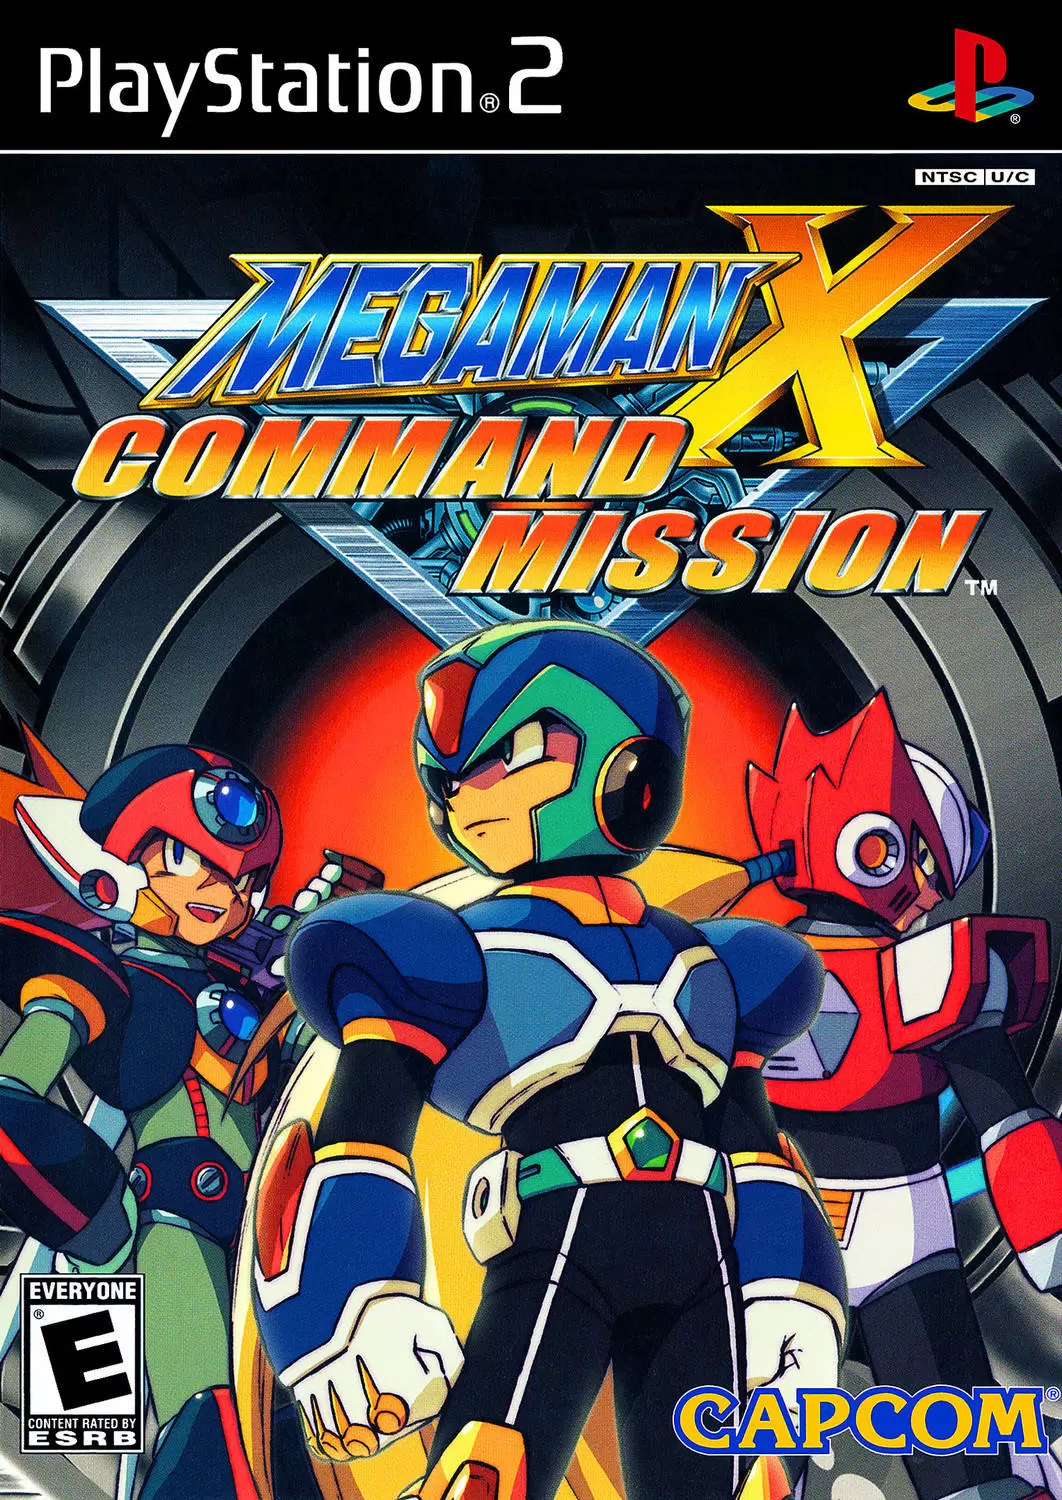 PS2 Games - Mega Man X: Command Mission